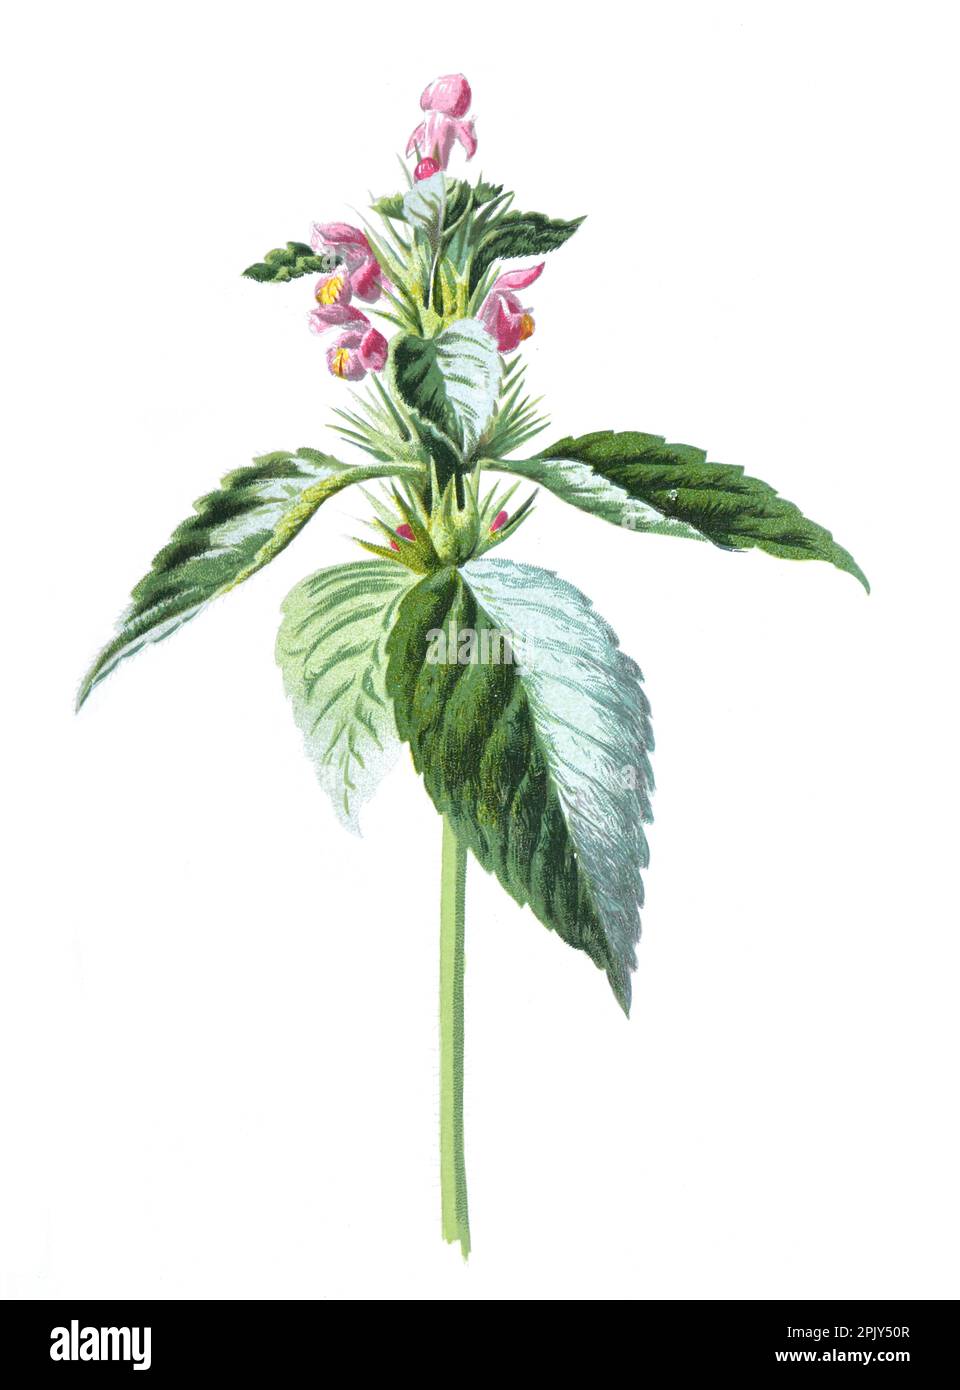 Galeopsis, communément appelé chanvre-ortie ou hemportie une plante herbacée. Illustration de fleurs d'ortie de champ sauvage dessinées à la main vintage. Banque D'Images